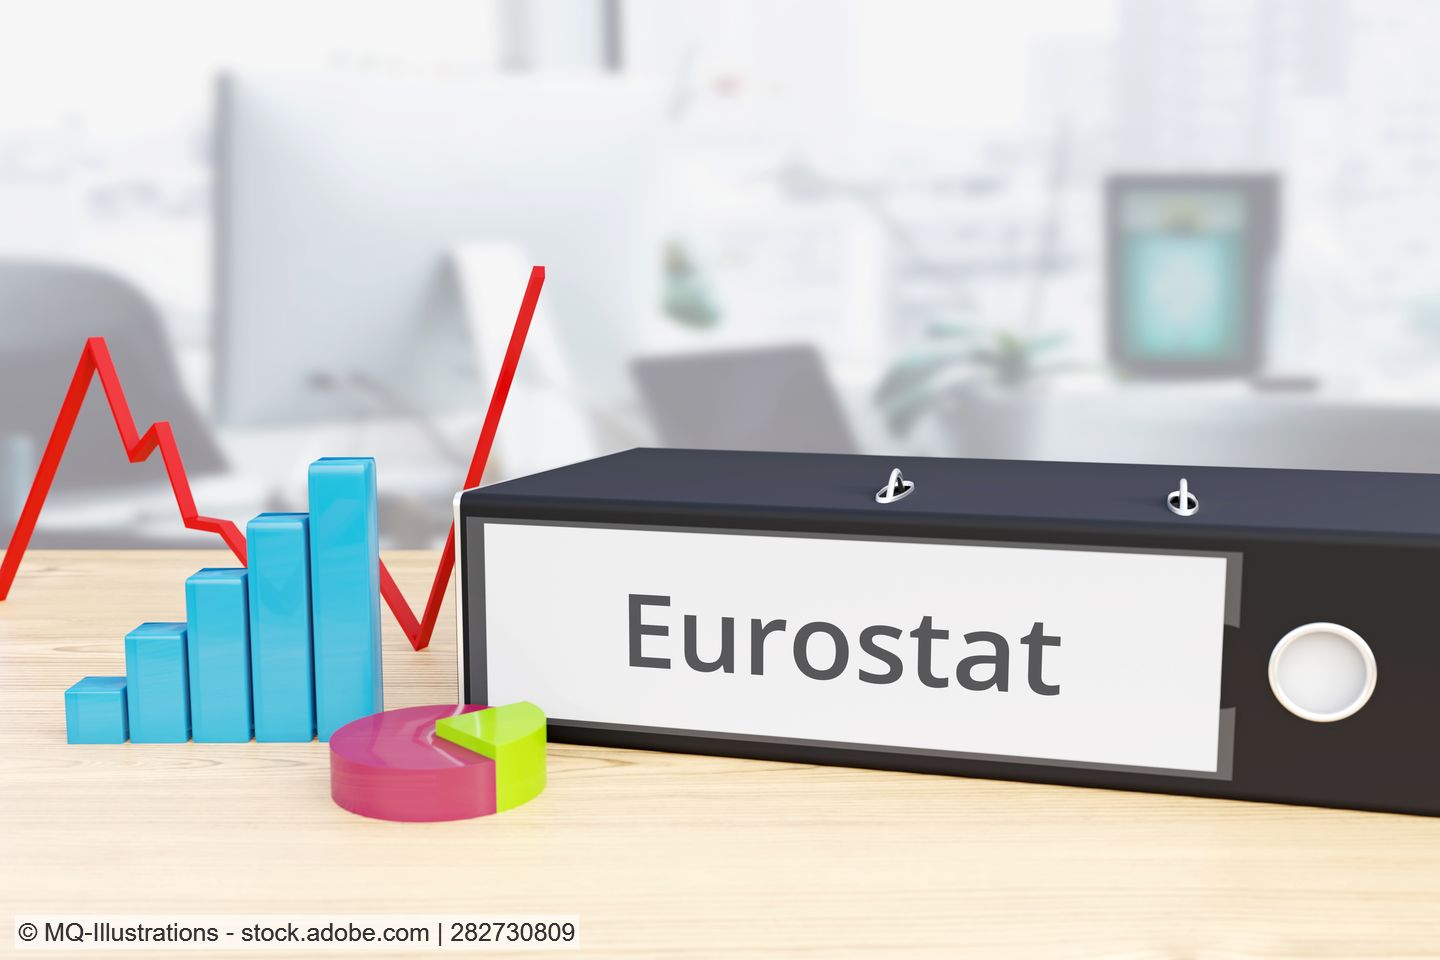 Folder labelled "Eurostat" lying on an office desk